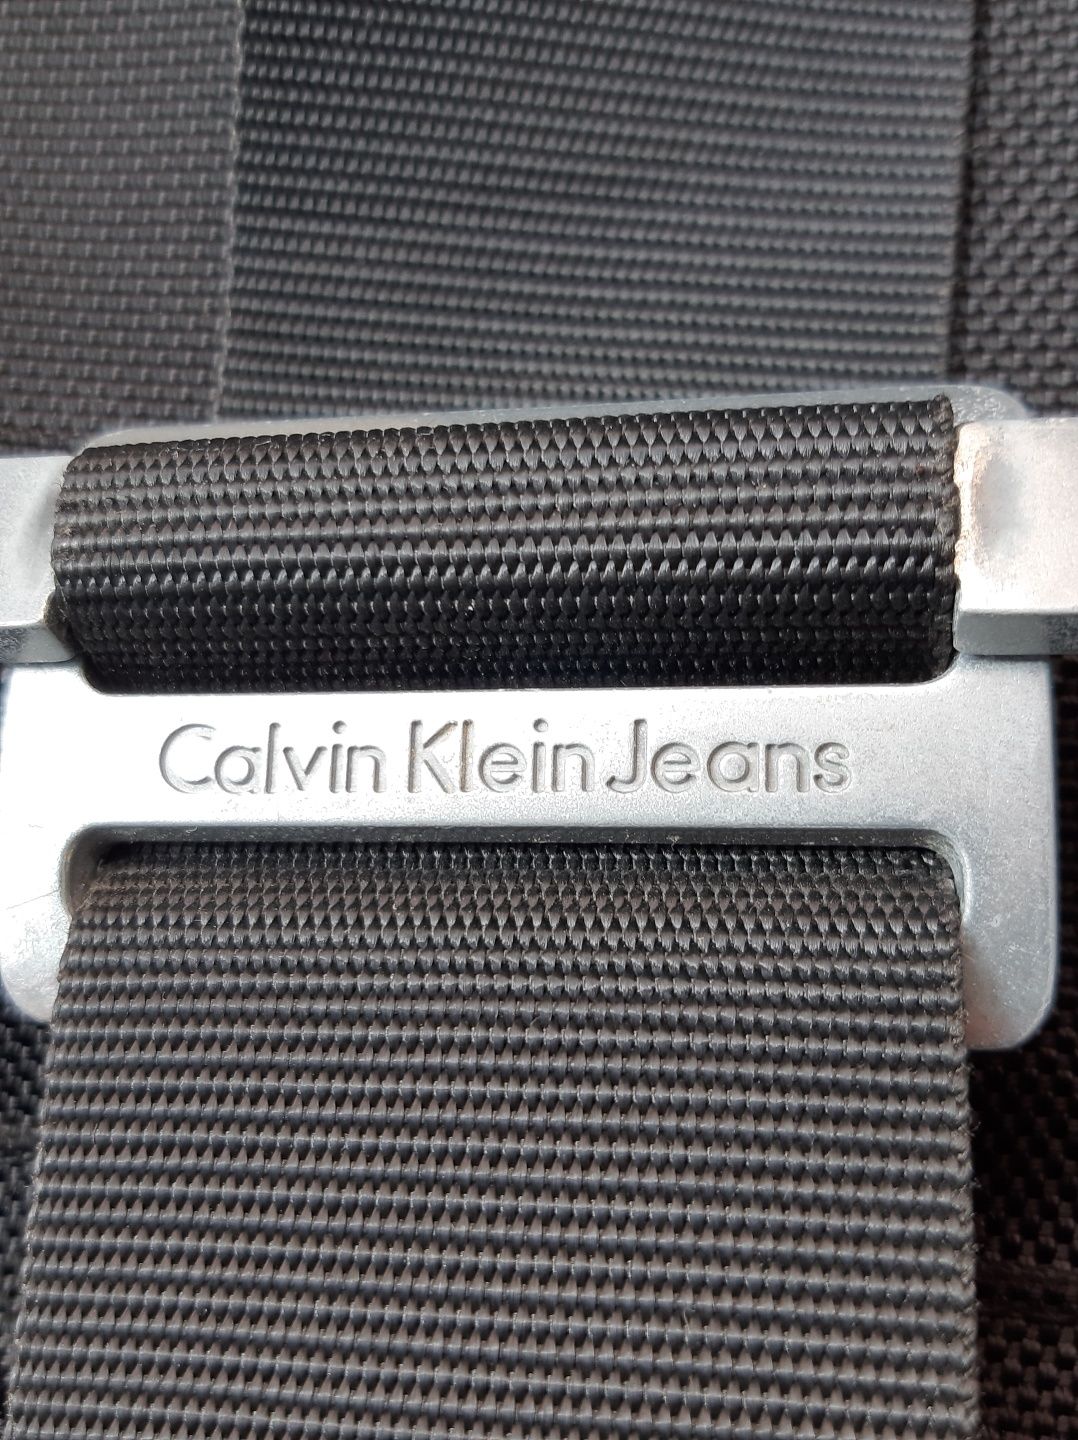 Mala para portátil Calvin Klein